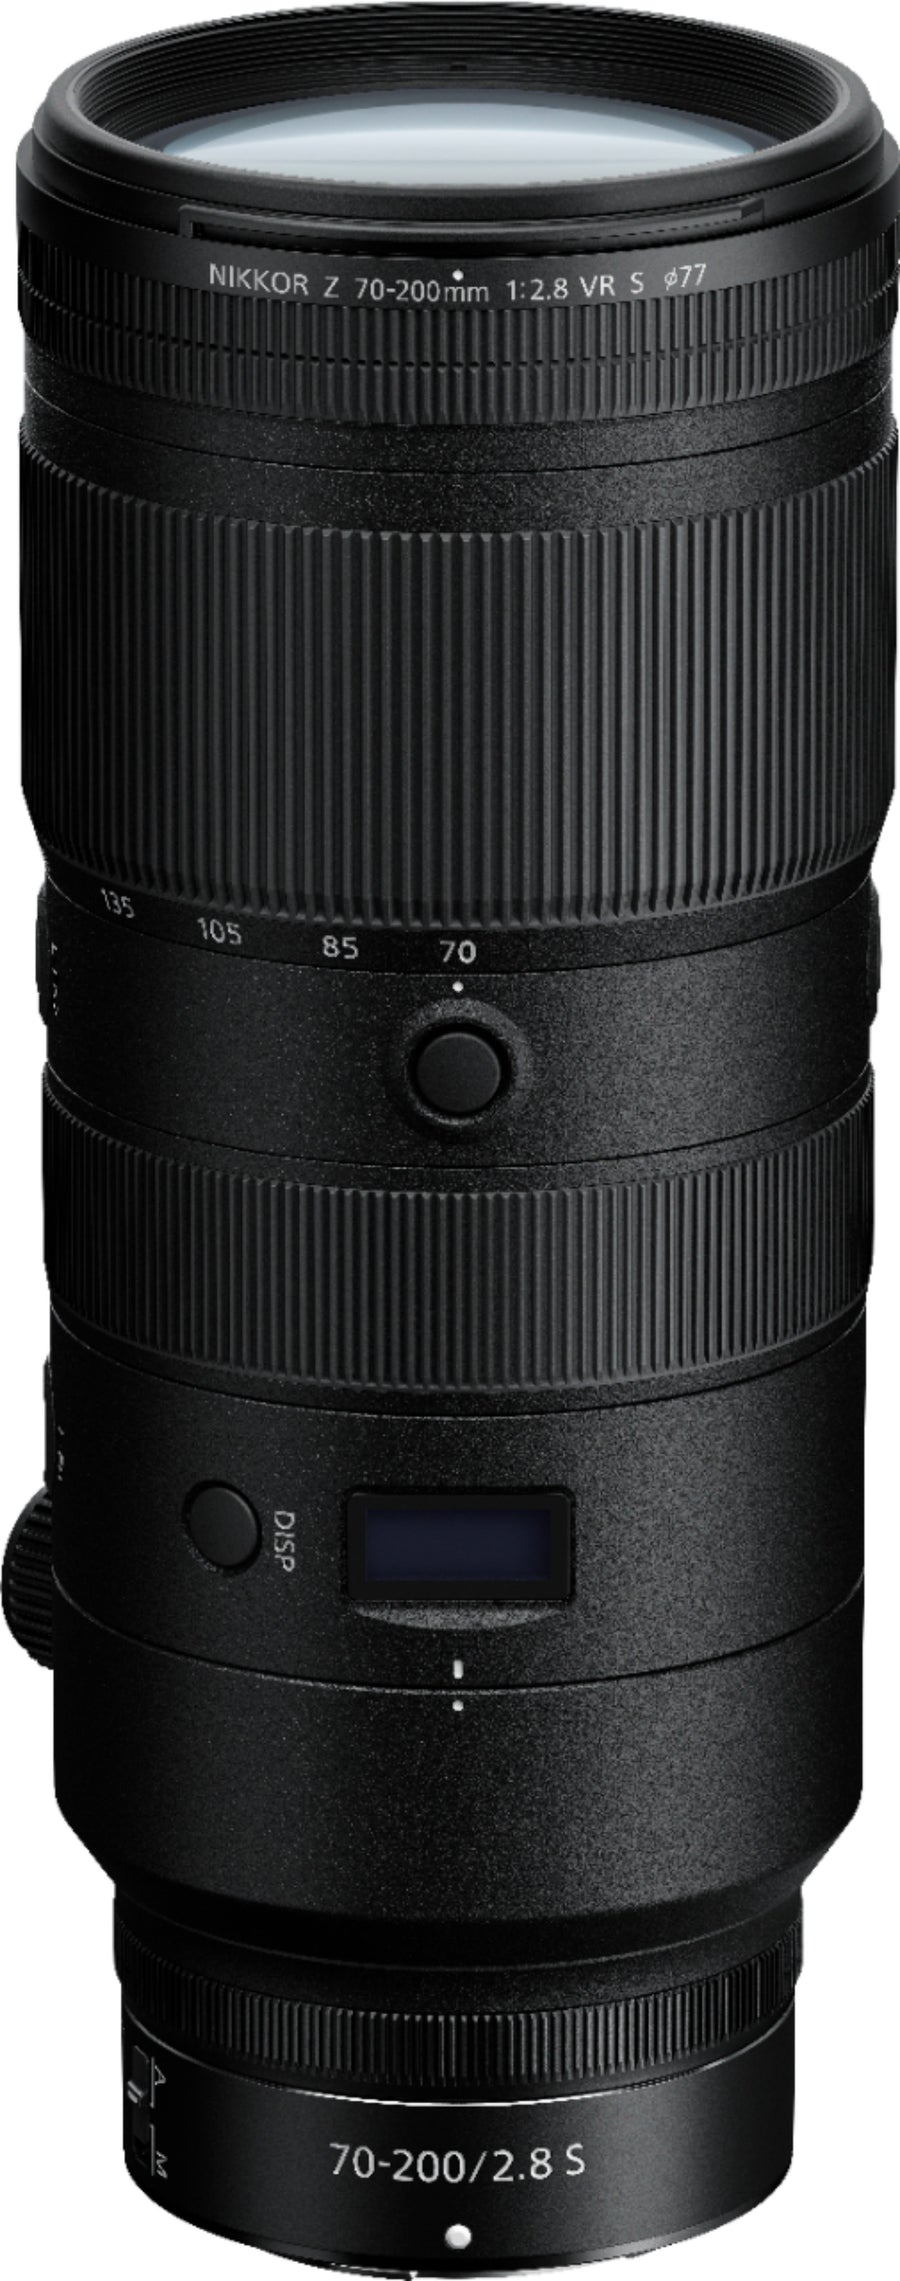 NIKKOR Z 70-200mm f/2.8 VR S Optical Telephoto Zoom Lens for Nikon Z Cameras - Black_0